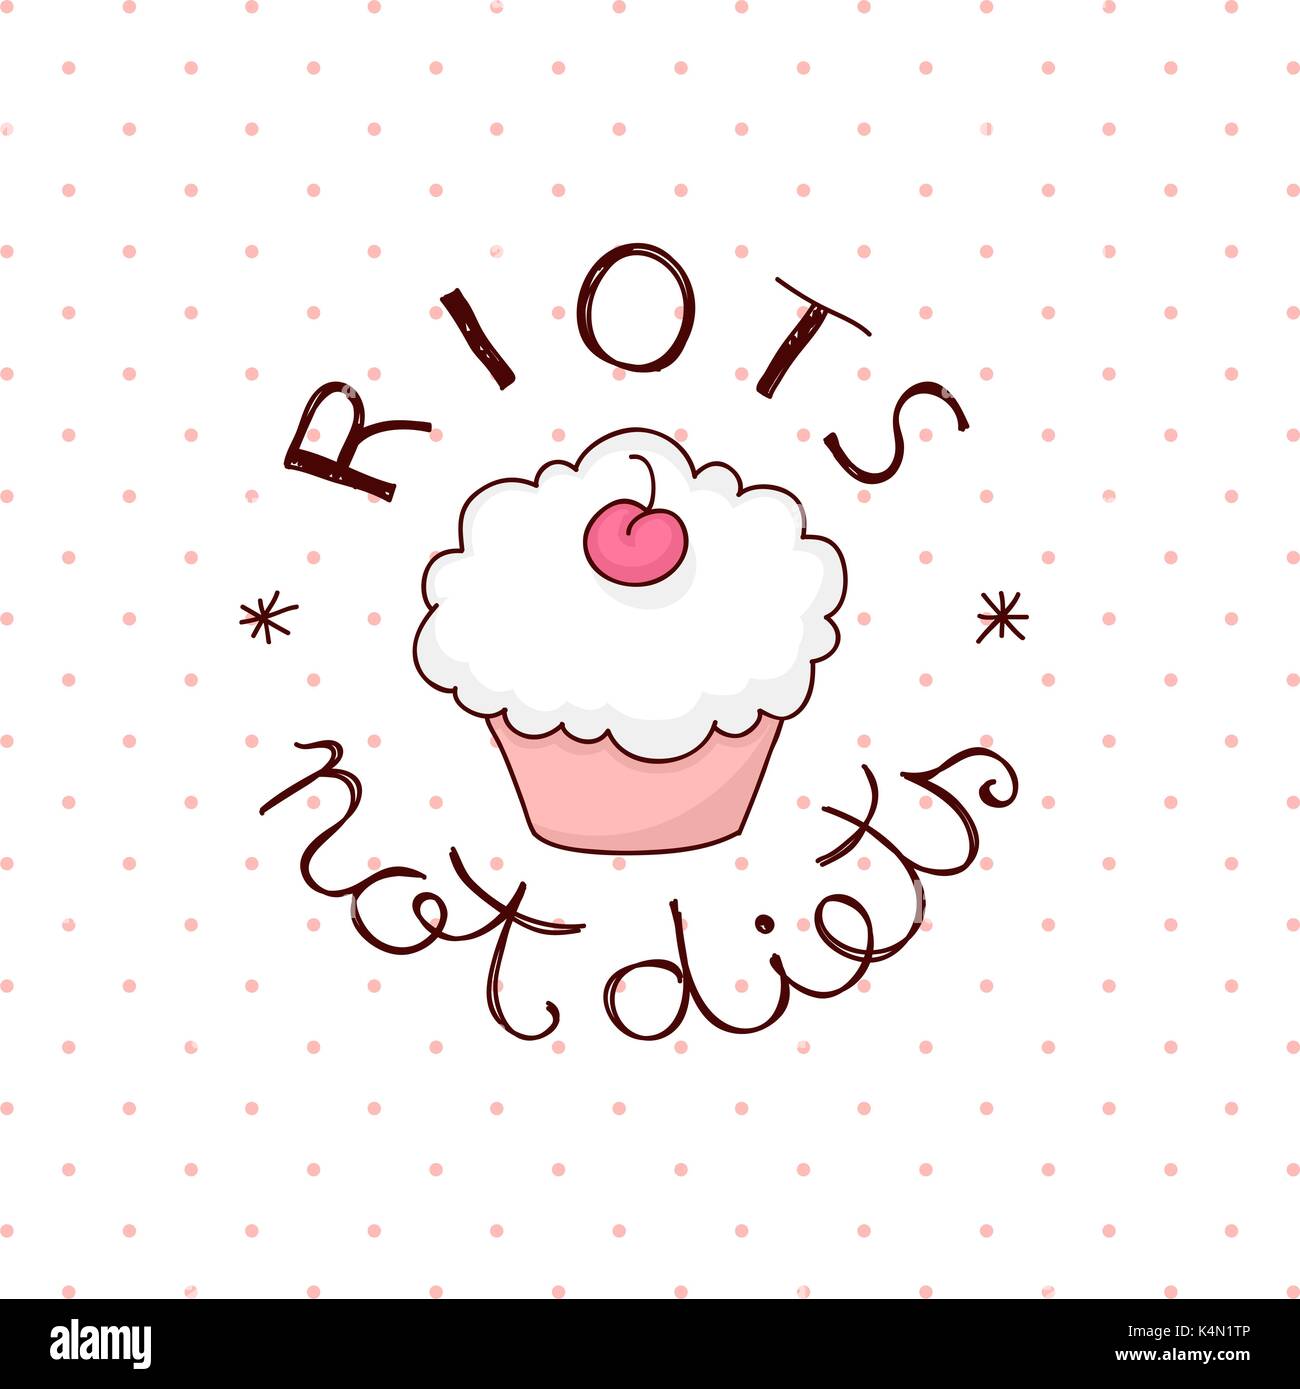 Sommosse non preventivo diete scritte a mano intorno carino cupcake. Luce polka dots background. Illustrazione Vettoriale